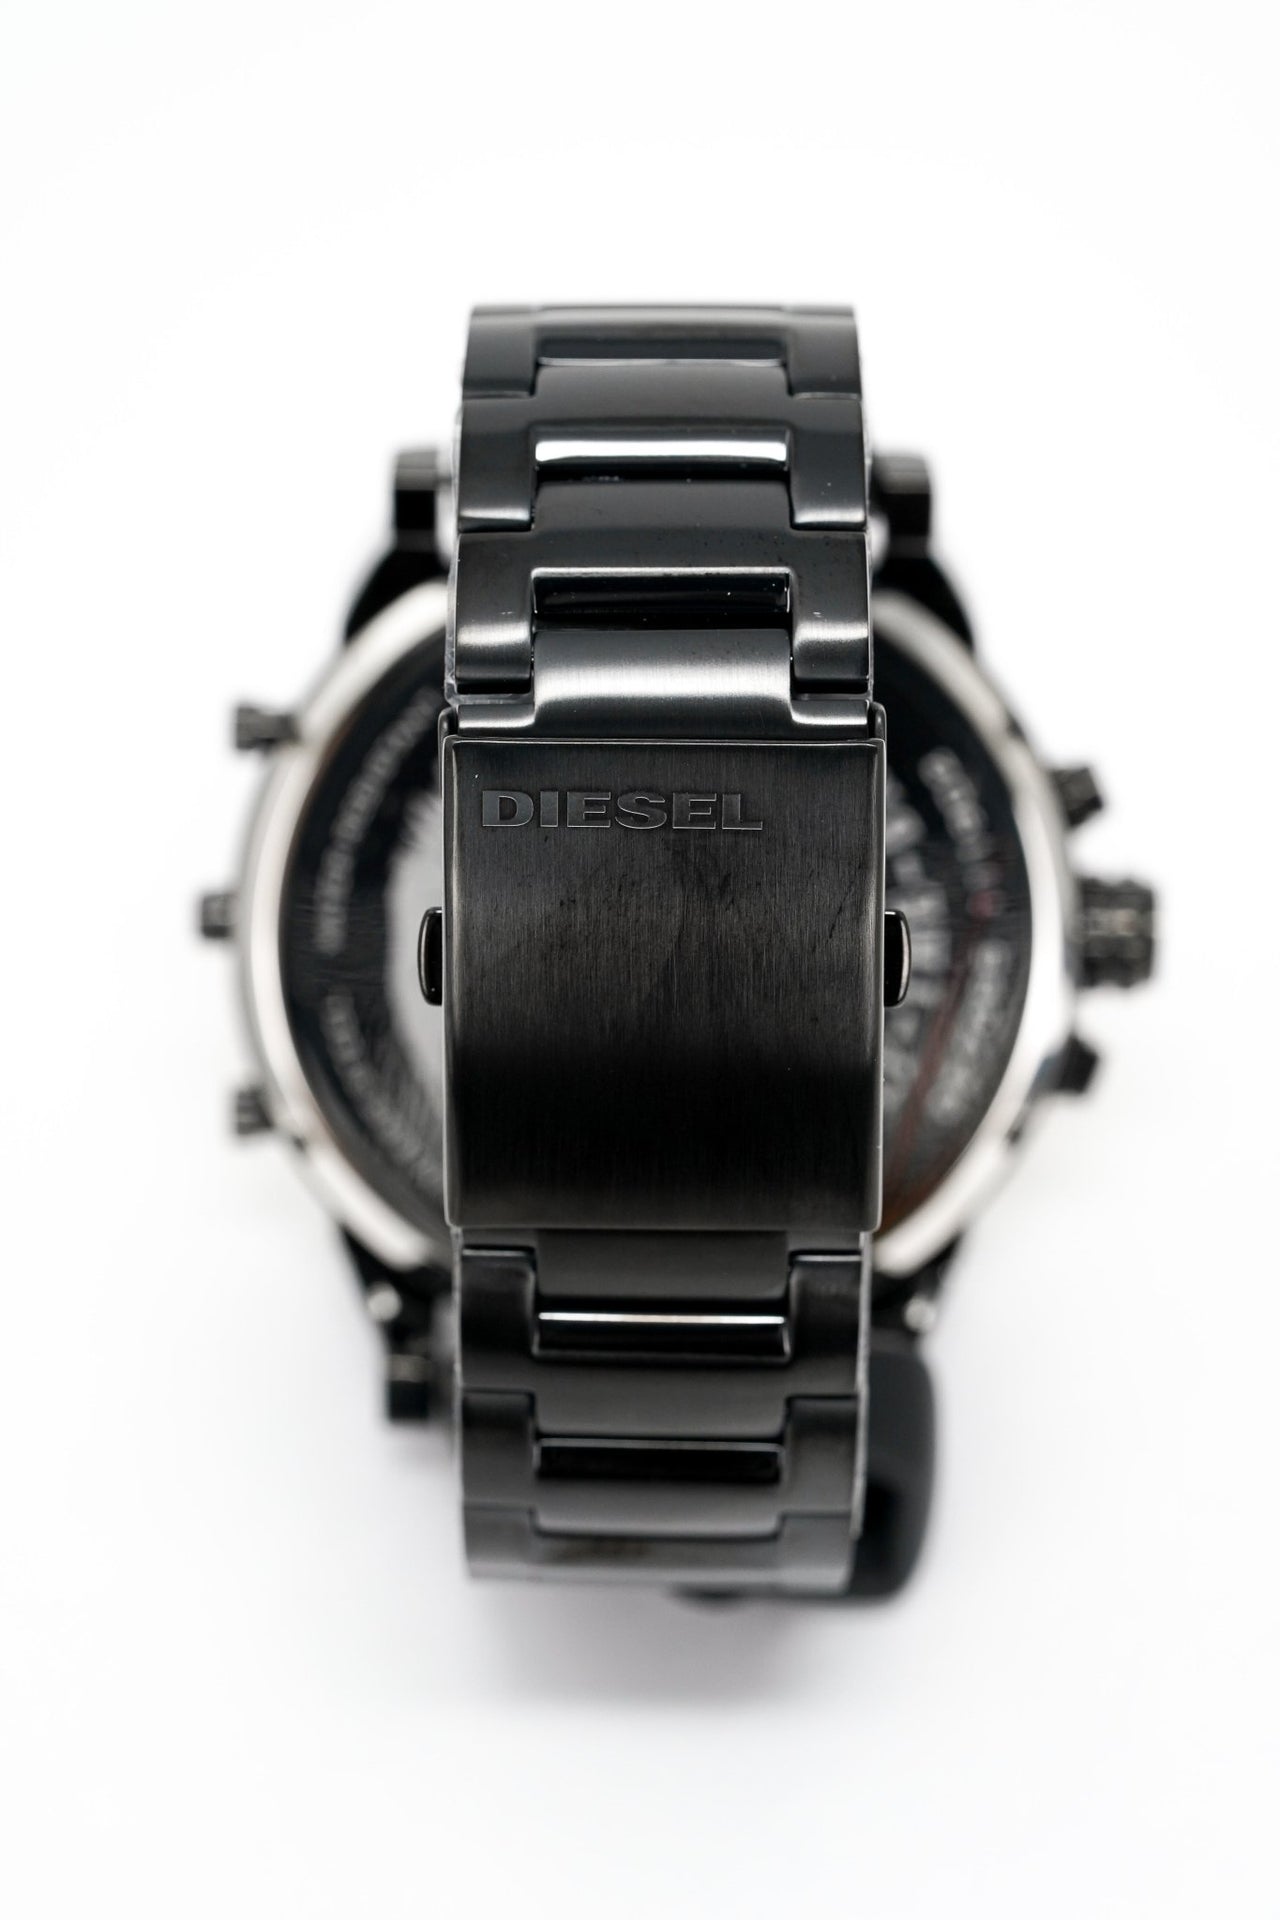 Diesel Men's Chronograph Watch Mr Daddy 2.0 Black DZ7395 - Watches & Crystals